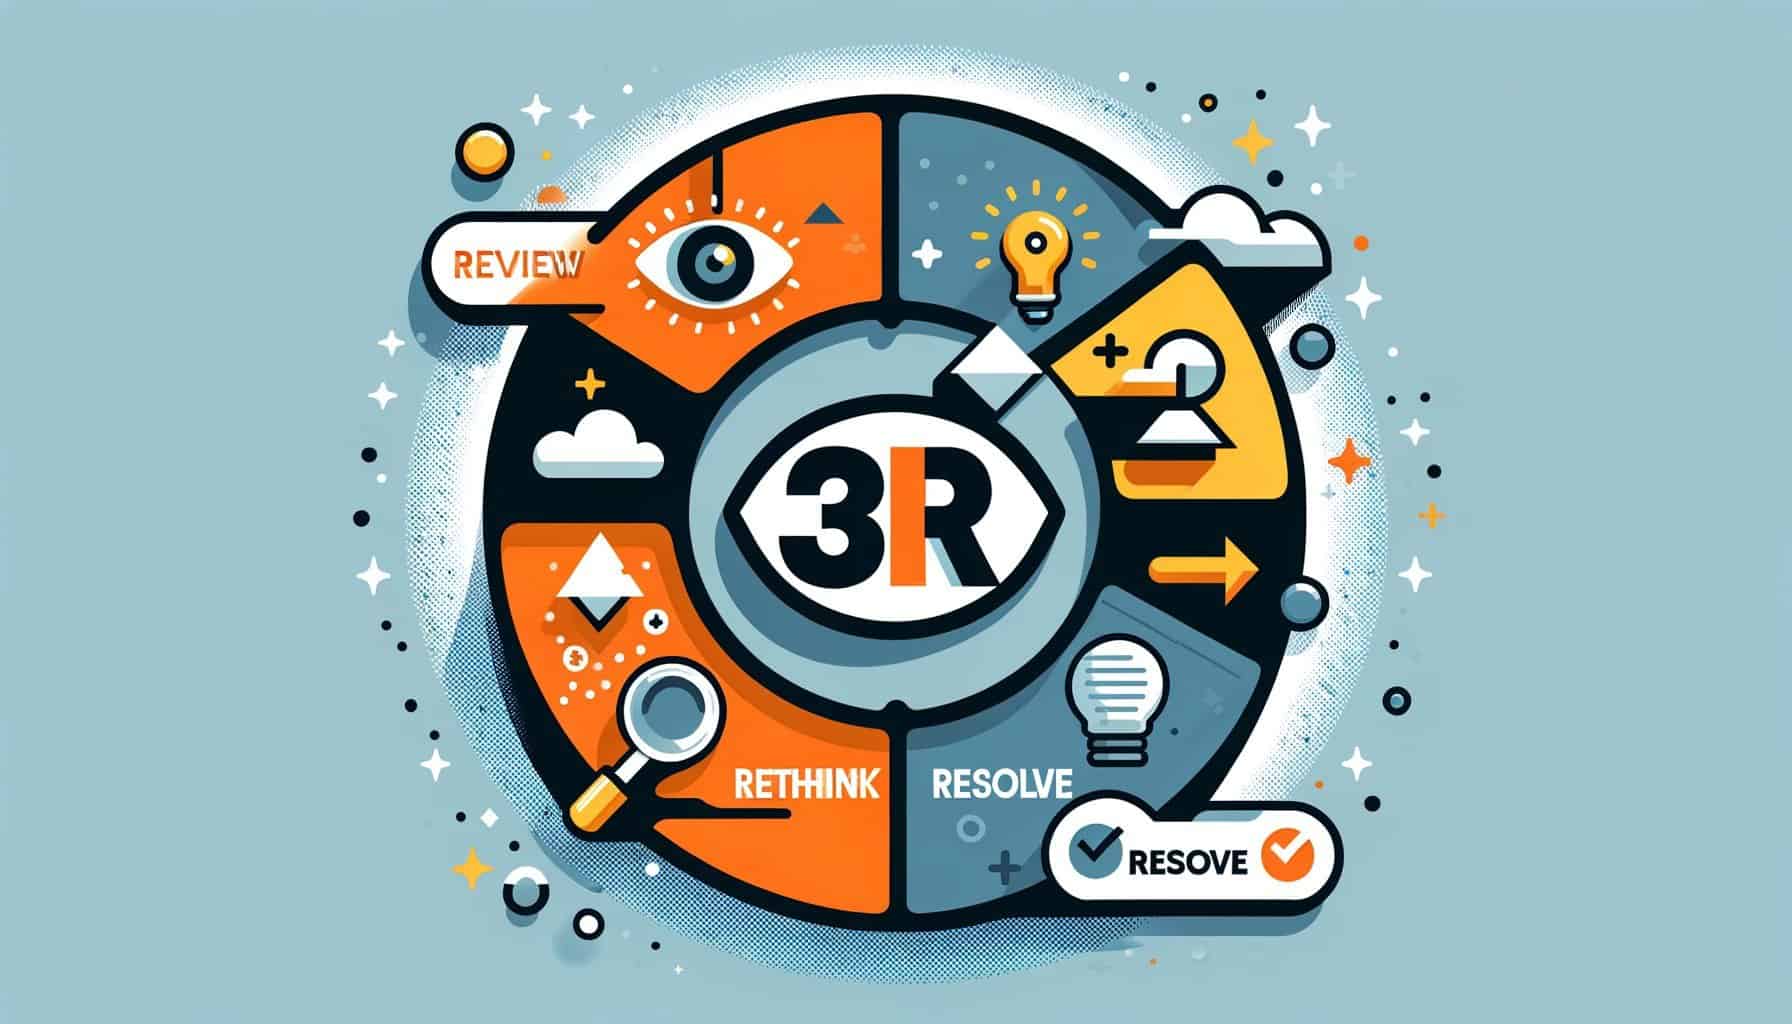 Формула за продаващ текст 3R (Review, Rethink, Resolve)